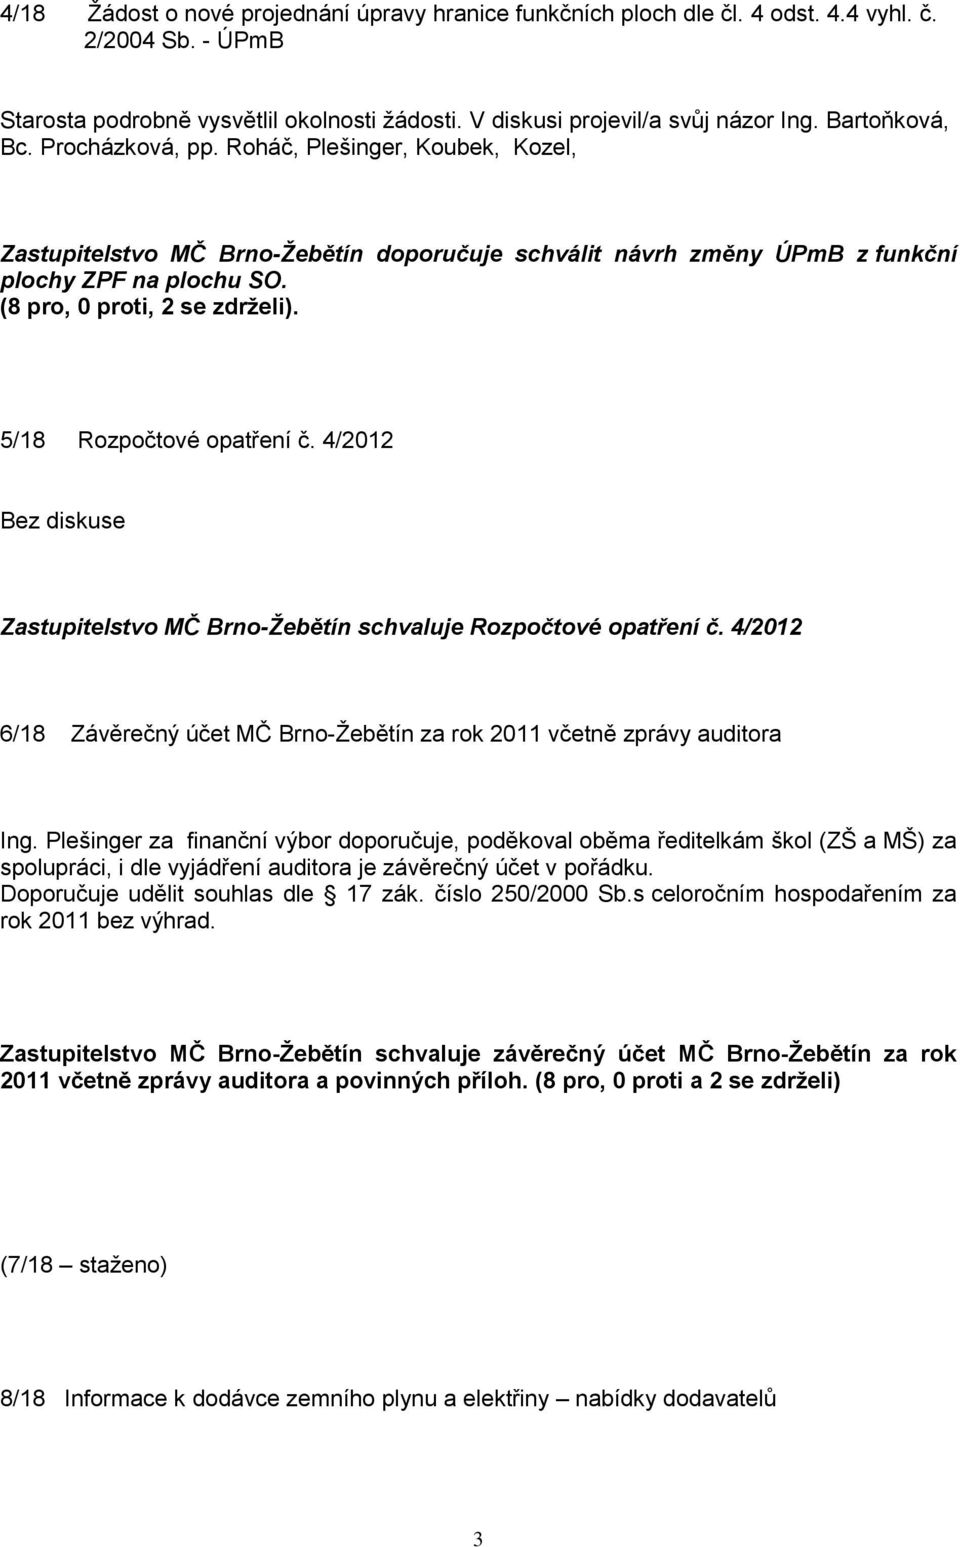 5/18 Rozpočtové opatření č. 4/2012 Bez diskuse Zastupitelstvo MČ Brno-Žebětín schvaluje Rozpočtové opatření č. 4/2012 6/18 Závěrečný účet MČ Brno-Žebětín za rok 2011 včetně zprávy auditora Ing.